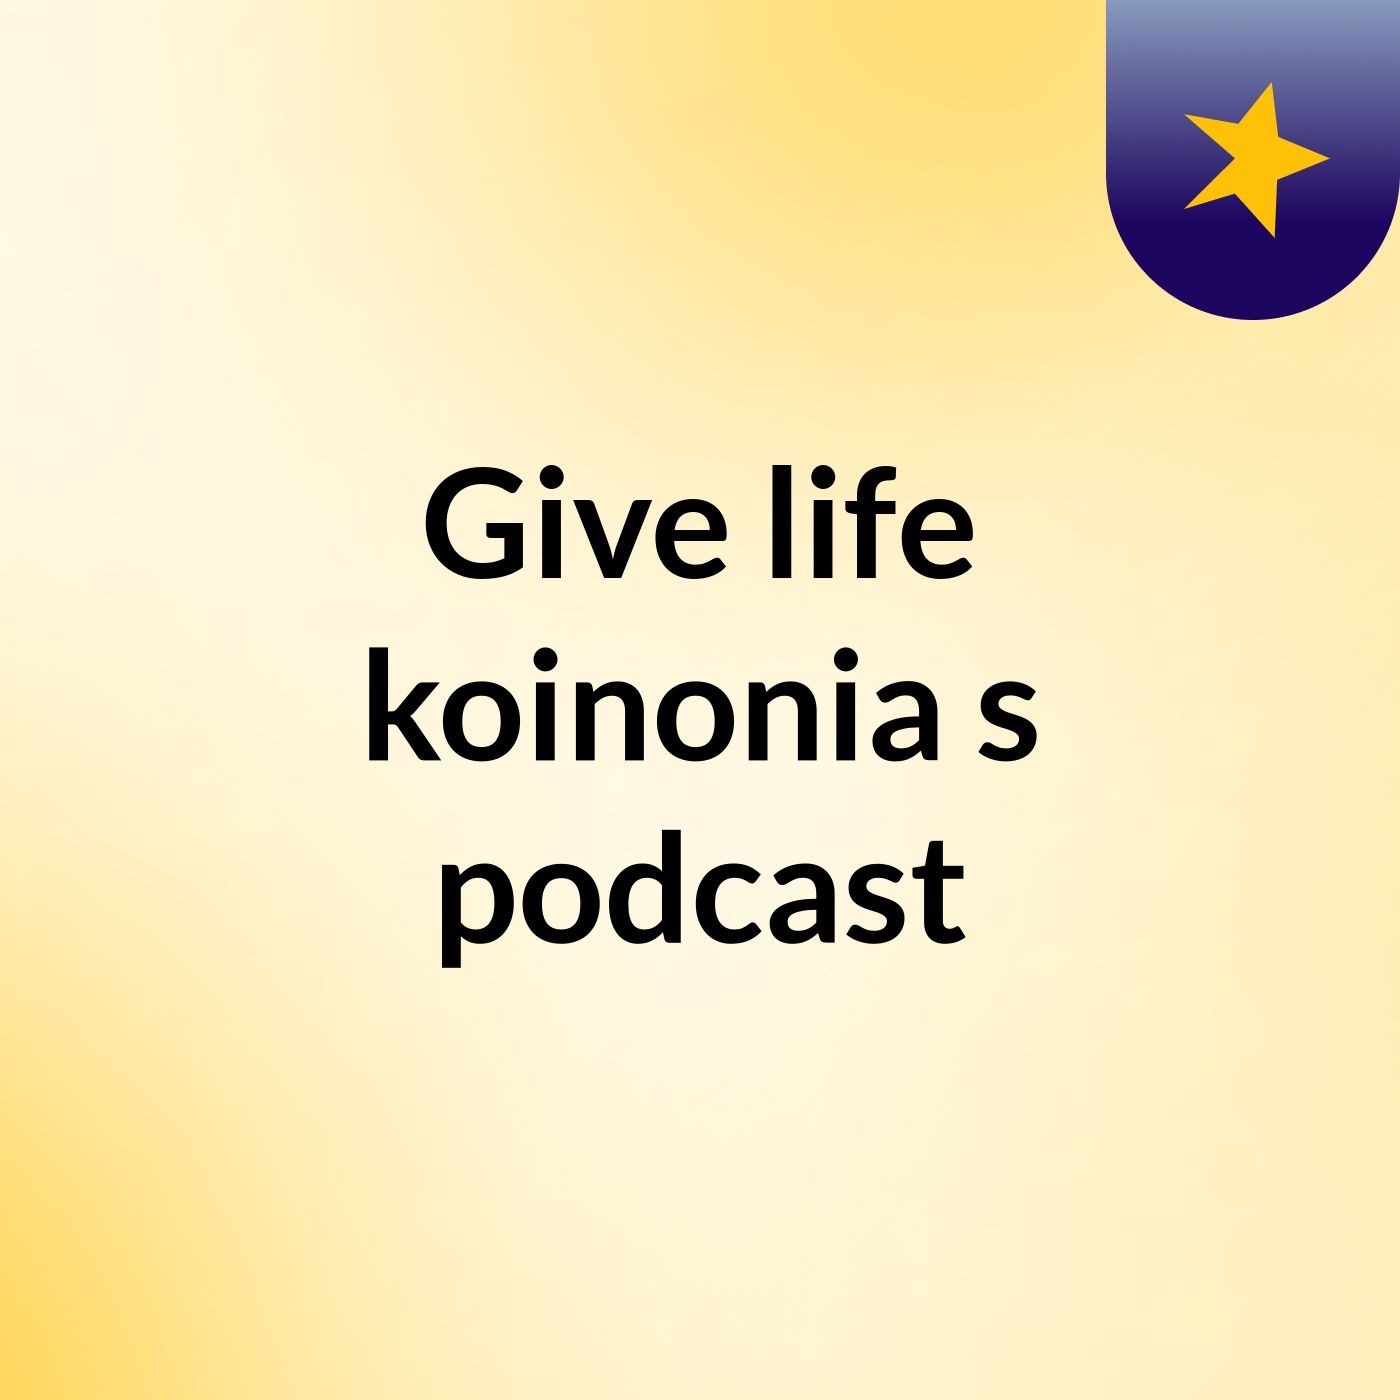 Give life koinonia's podcast